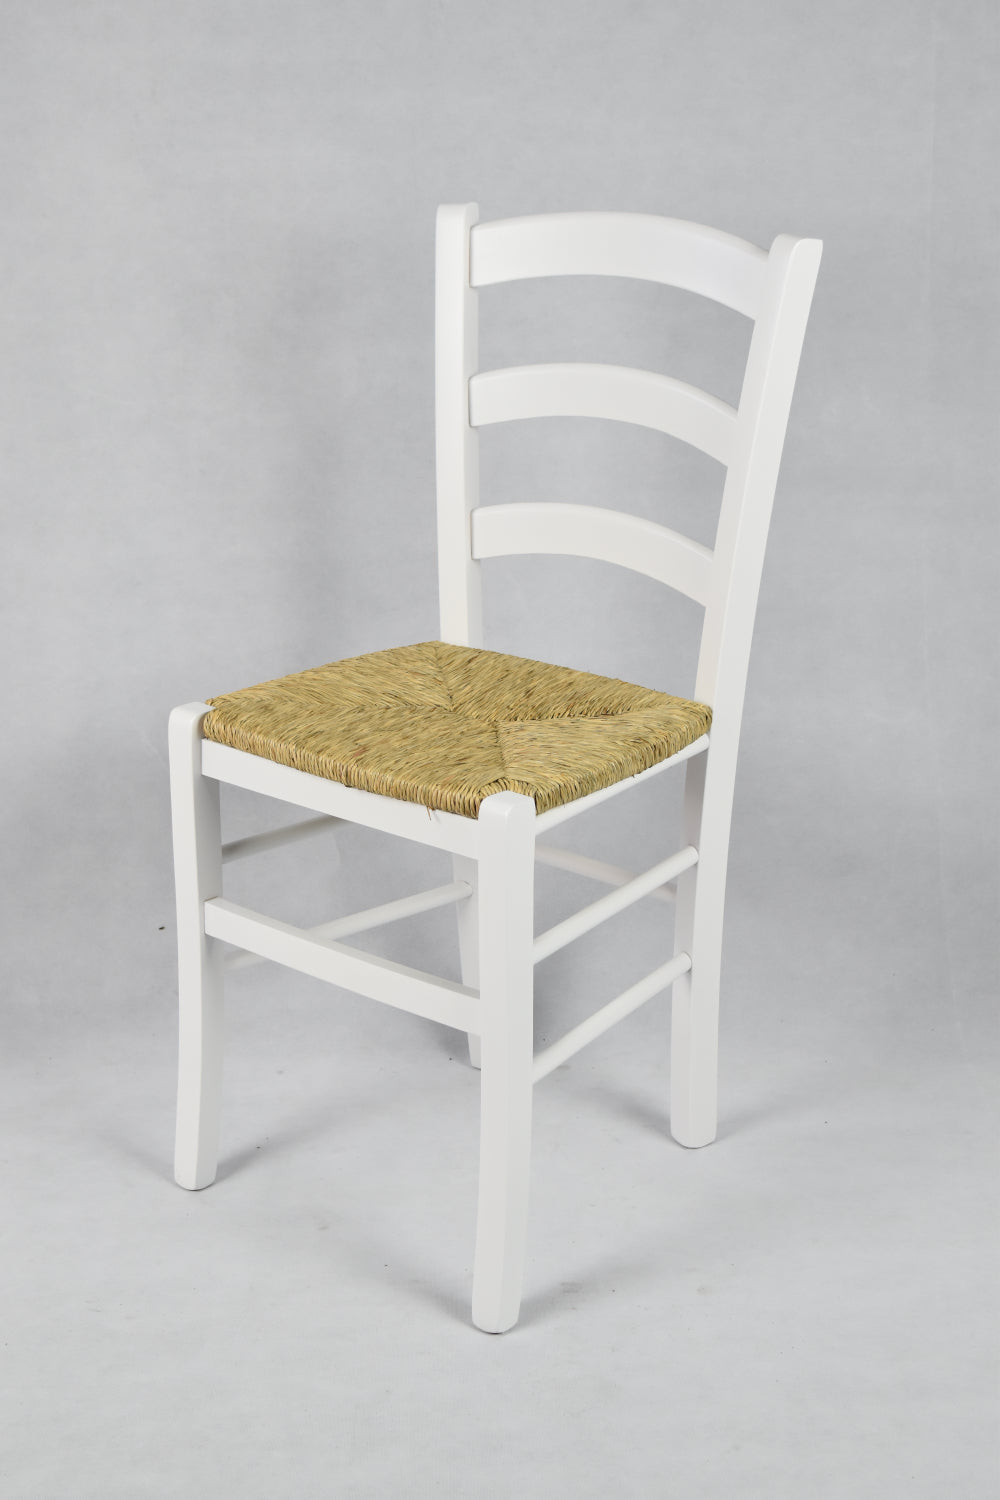 Tommychairs - Set 2 sillas de Cocina y Comedor  Venezia, Estructura en Madera de Haya barnizada Color Blanco y Asiento en Paja